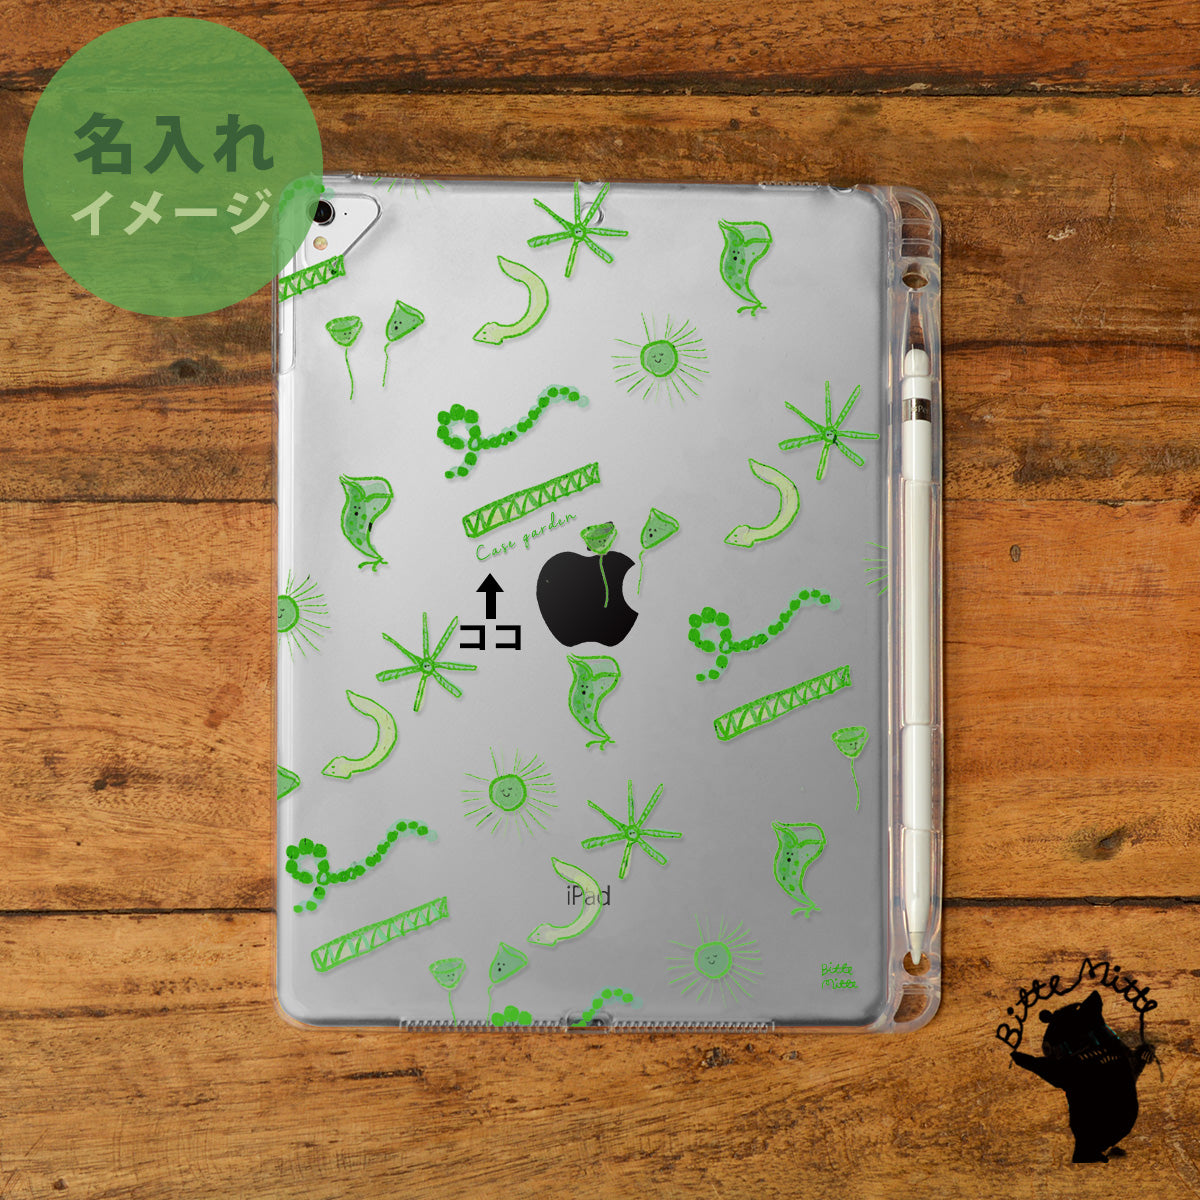 iPad クリアケース ペン収納 カバー おしゃれ かわいい 微生物 プランクトン 名入れ